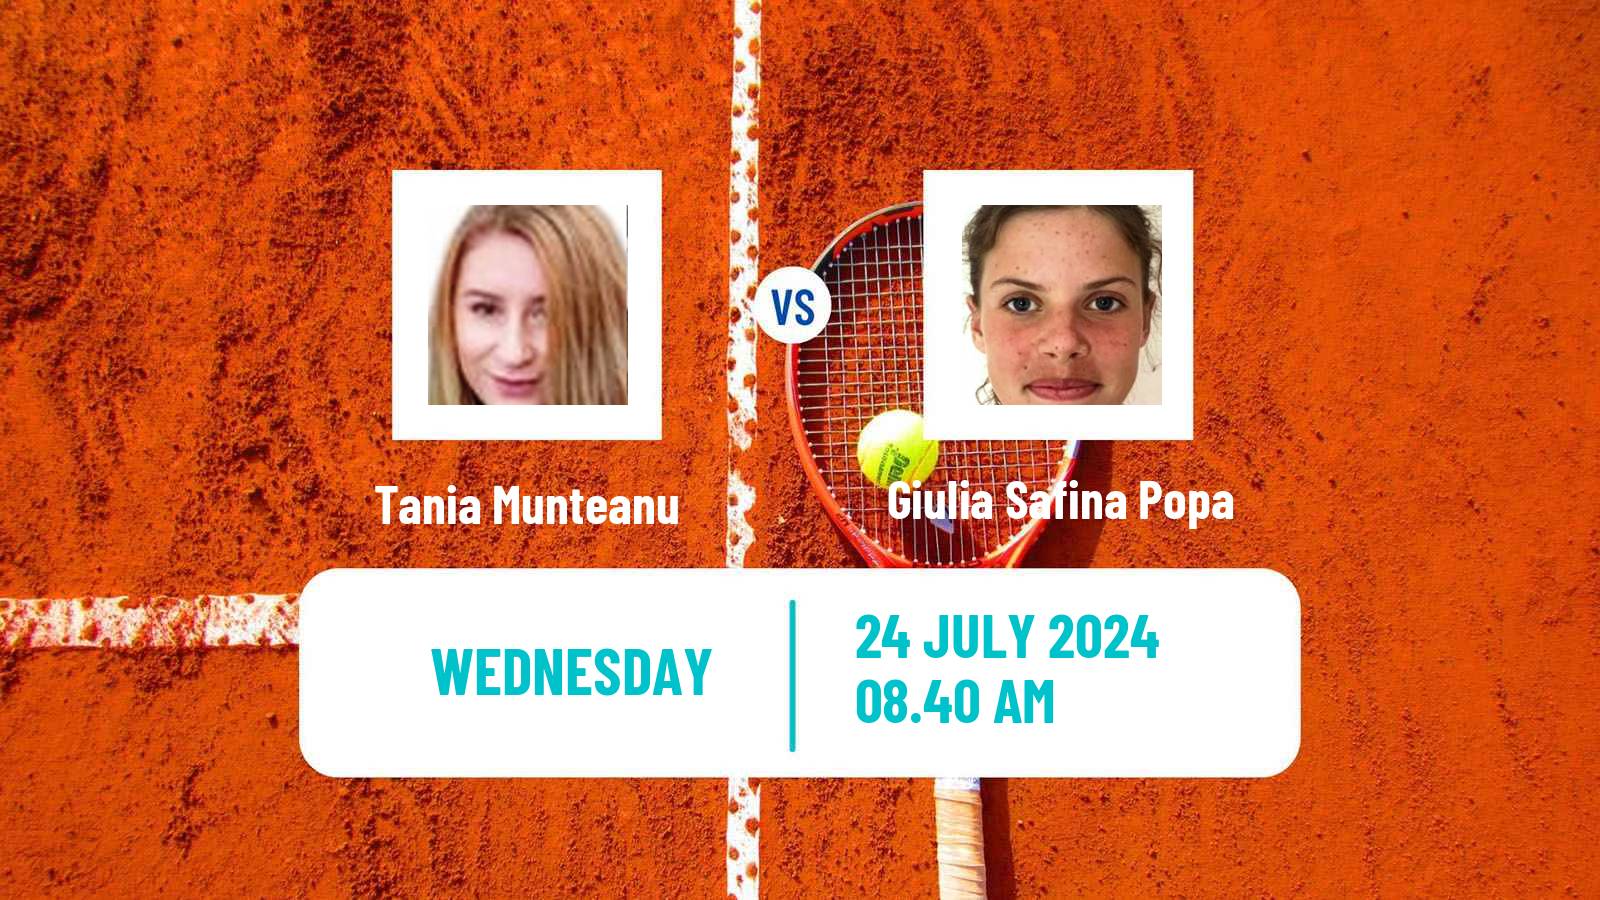 Tennis ITF W15 Satu Mare Women Tania Munteanu - Giulia Safina Popa